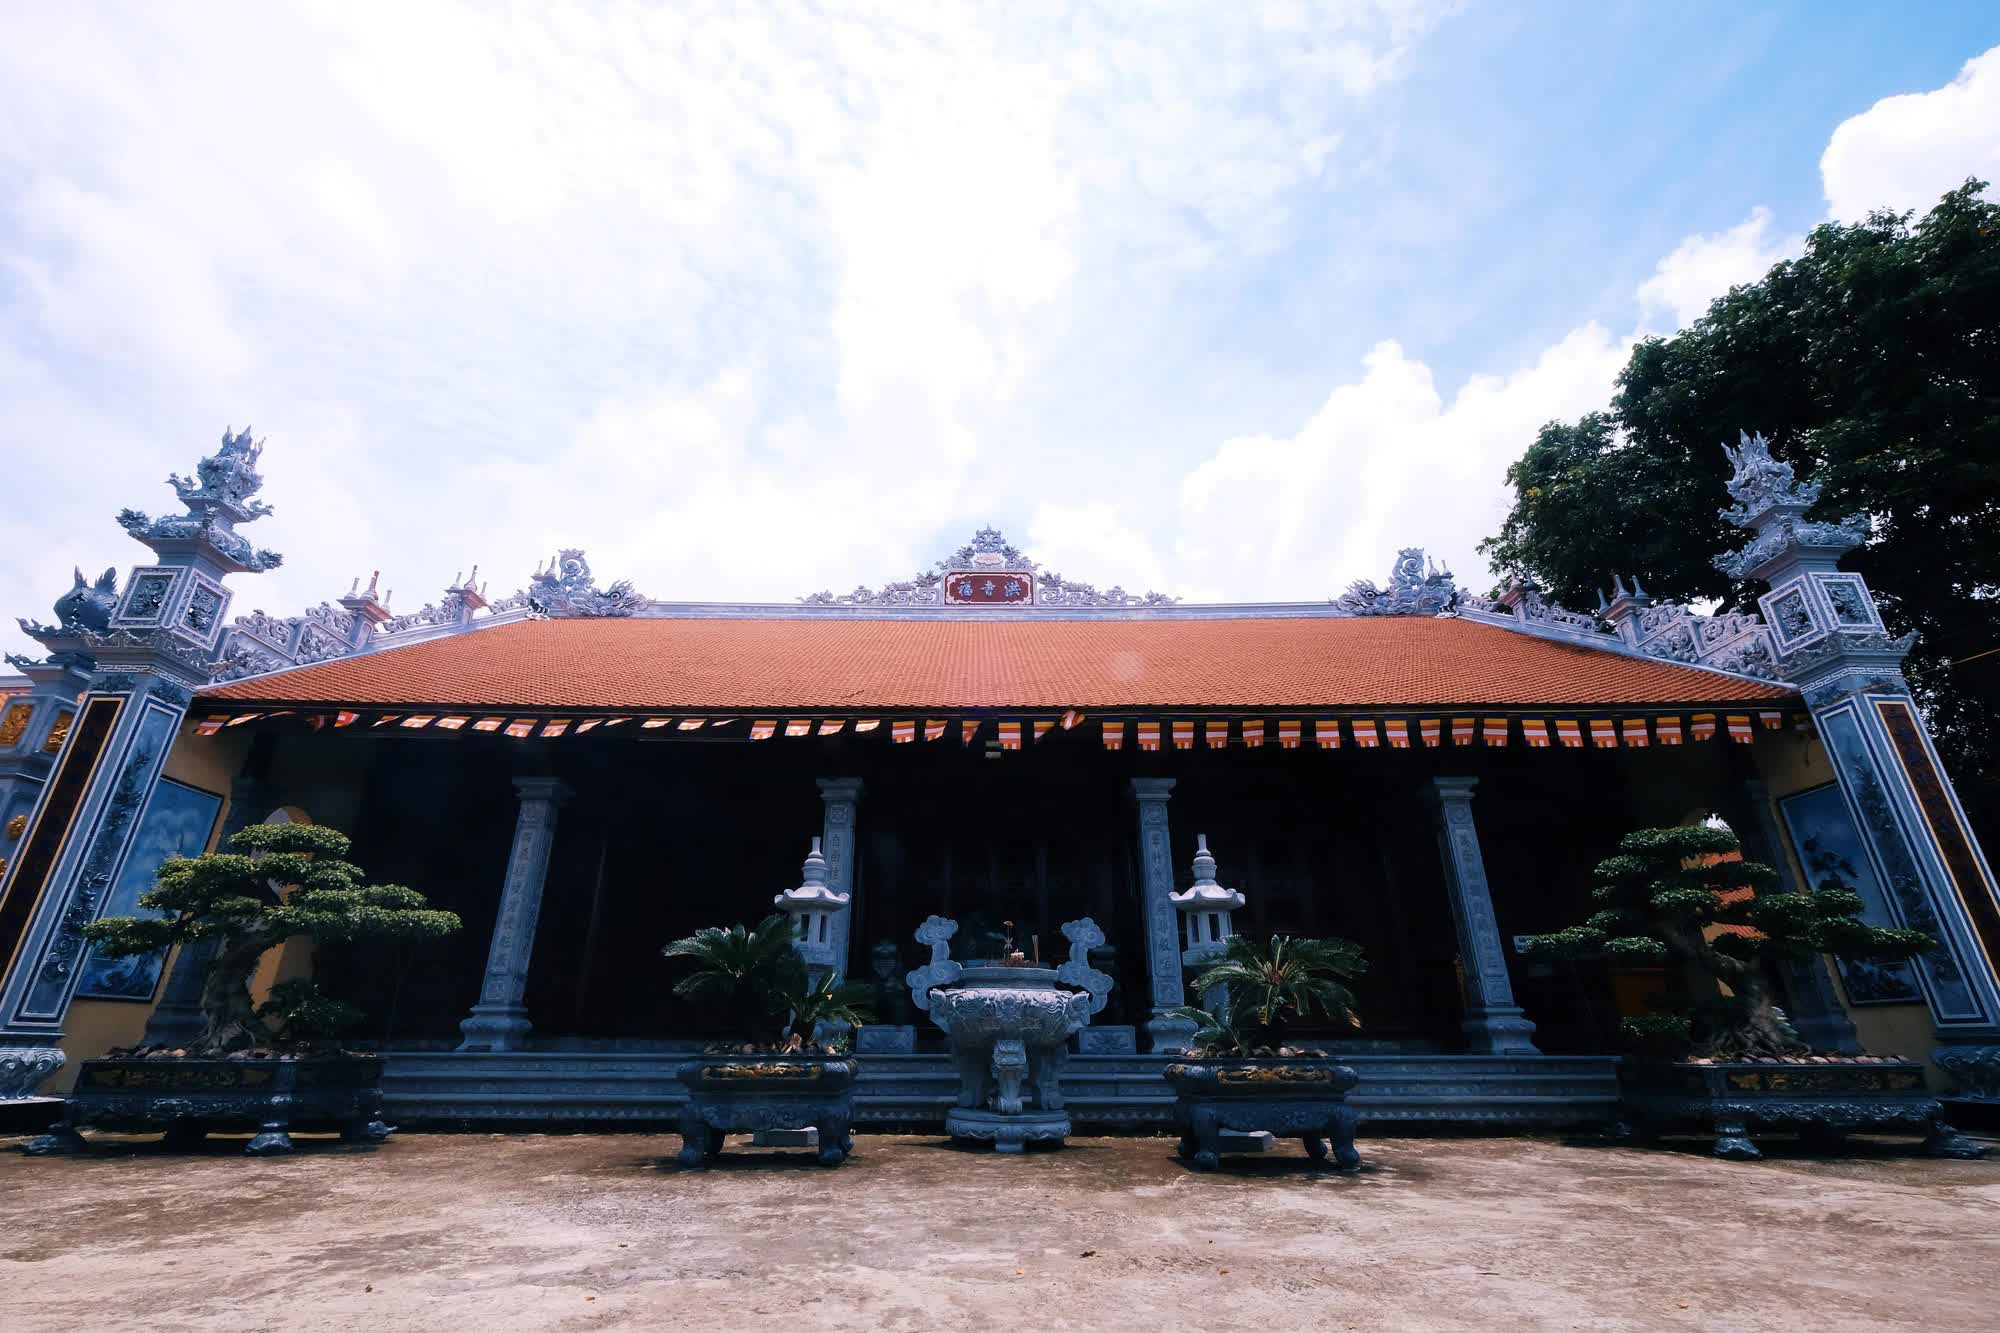 Về Hải Phòng thăm đền Mõ, nơi có cây gạo hơn 700 tuổi gắn liền với chuyện tình của nàng công chúa nổi tiếng nhất lịch sử Việt Nam - Ảnh 5.